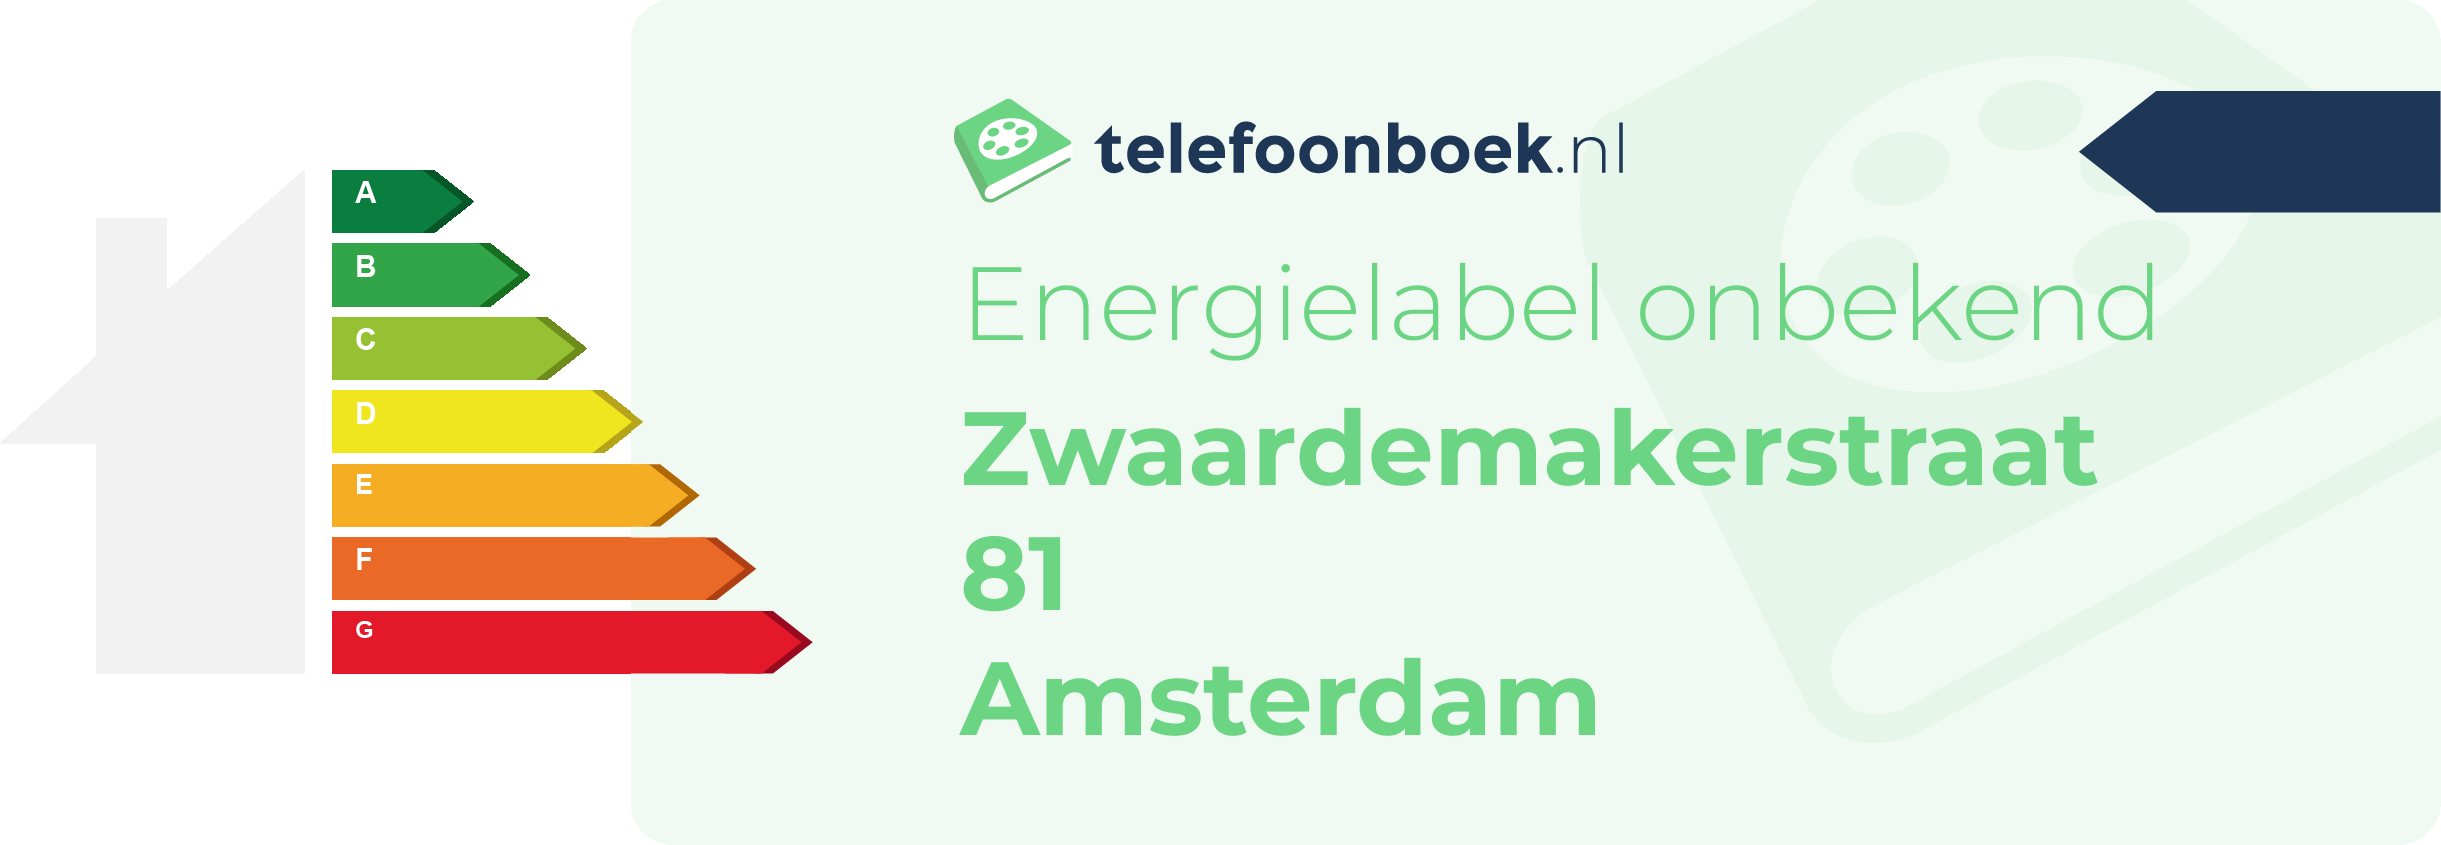 Energielabel Zwaardemakerstraat 81 Amsterdam